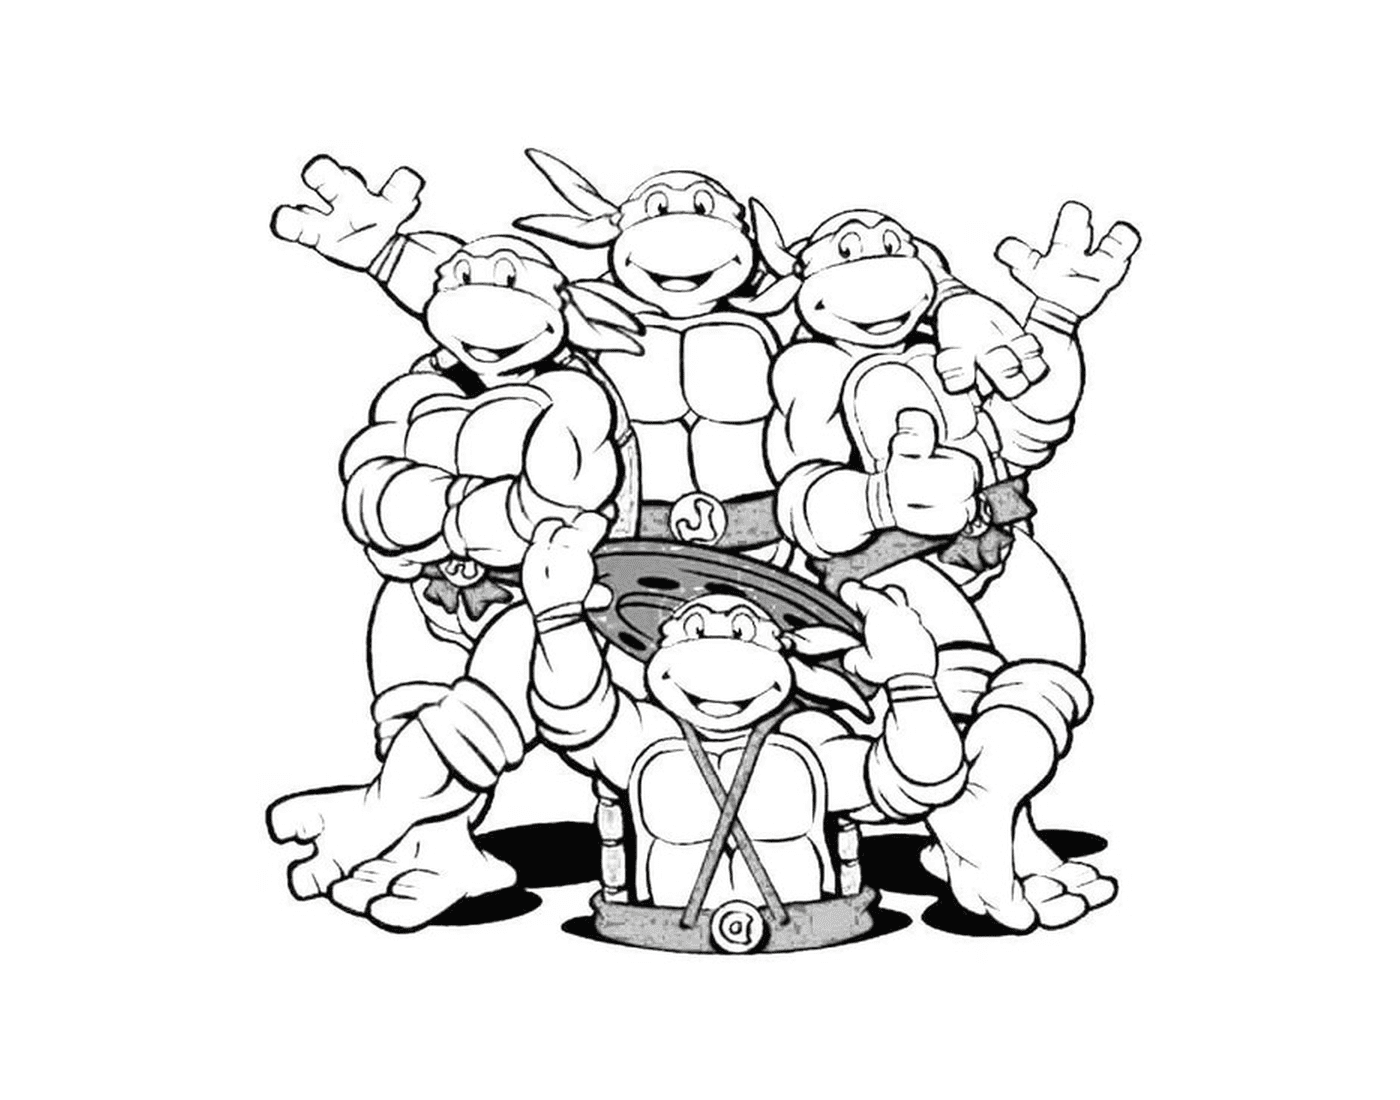   Équipe fantastique de tortues ninjas 